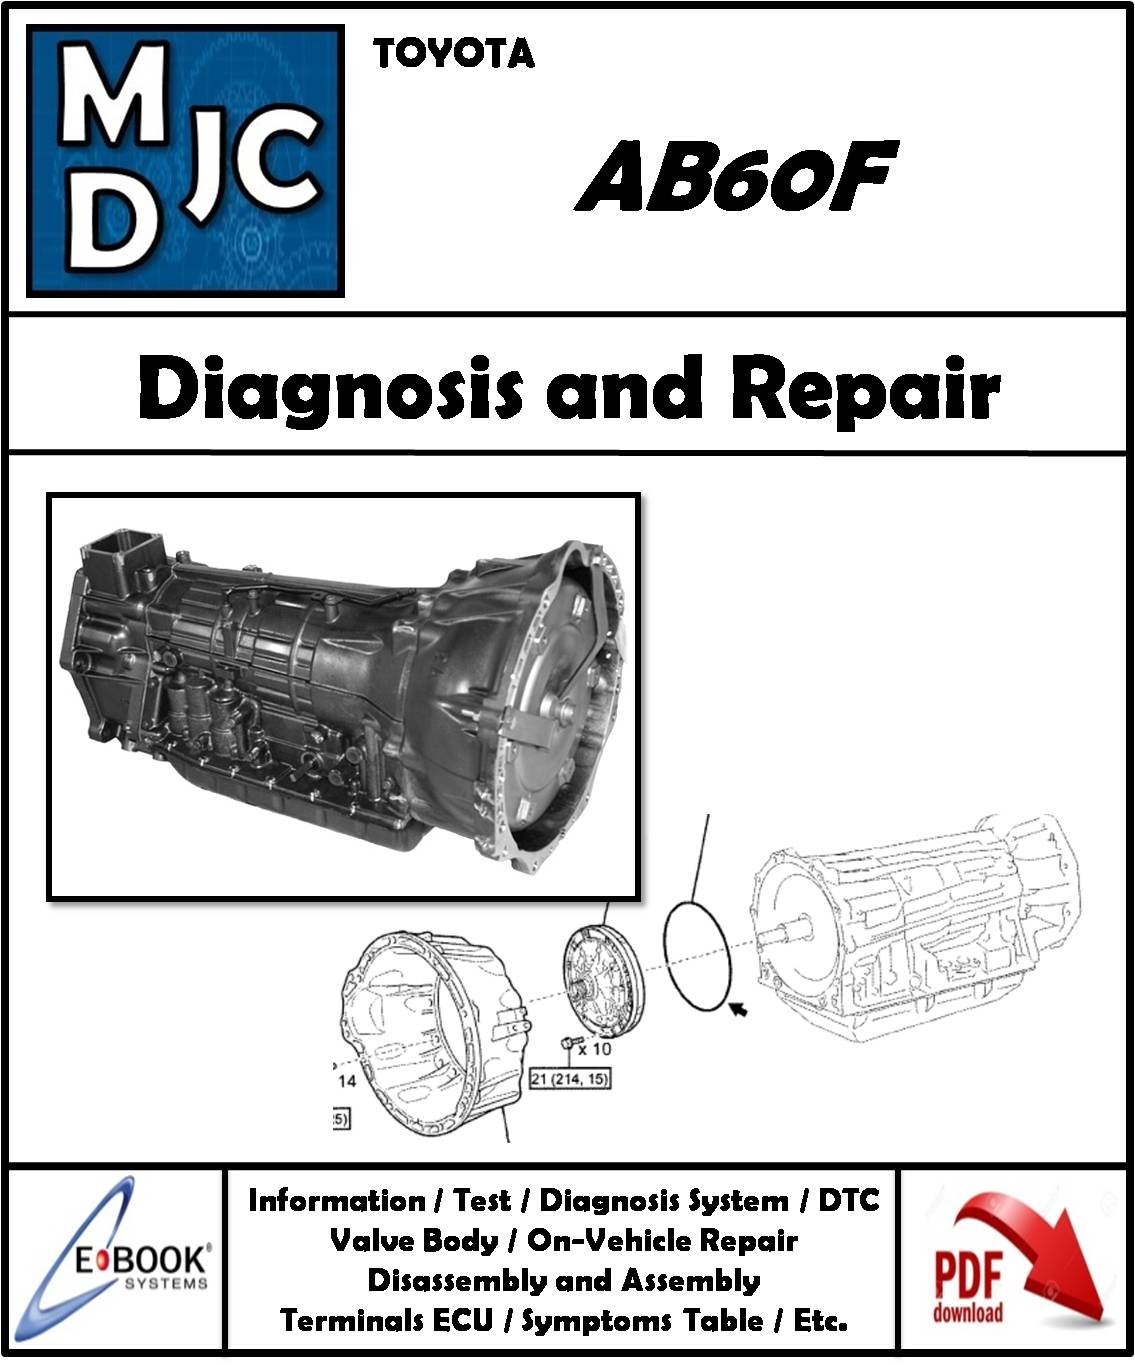 Manual de Taller ( Diagnóstico y Reparación ) Caja Automática Toyota AB60F